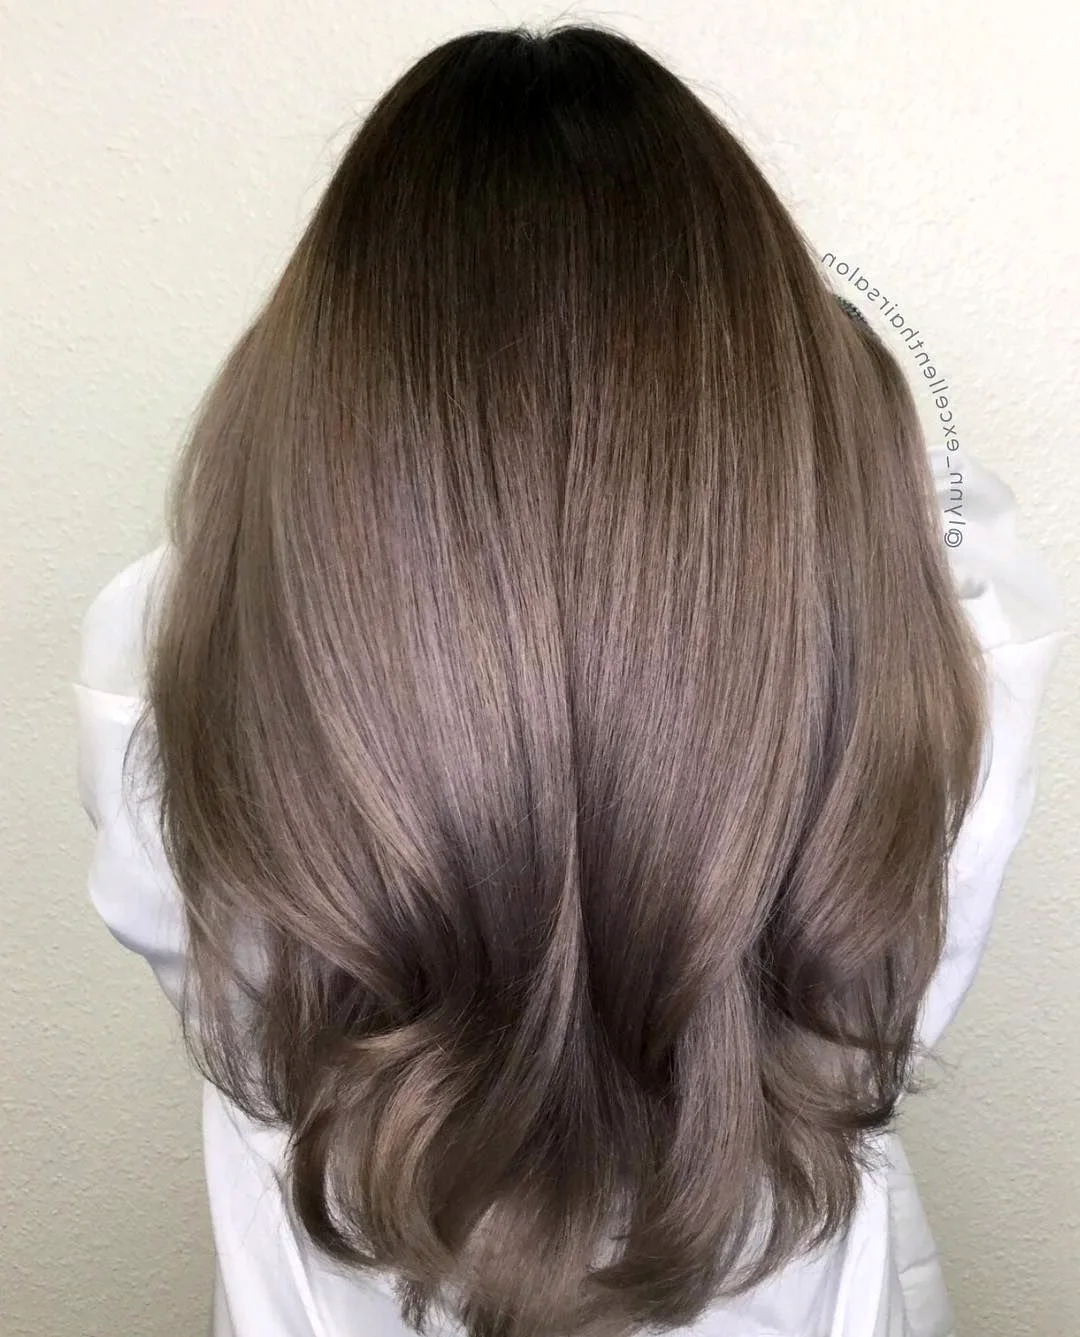 Как выбрать самые красивые оттенки русого цвета волос